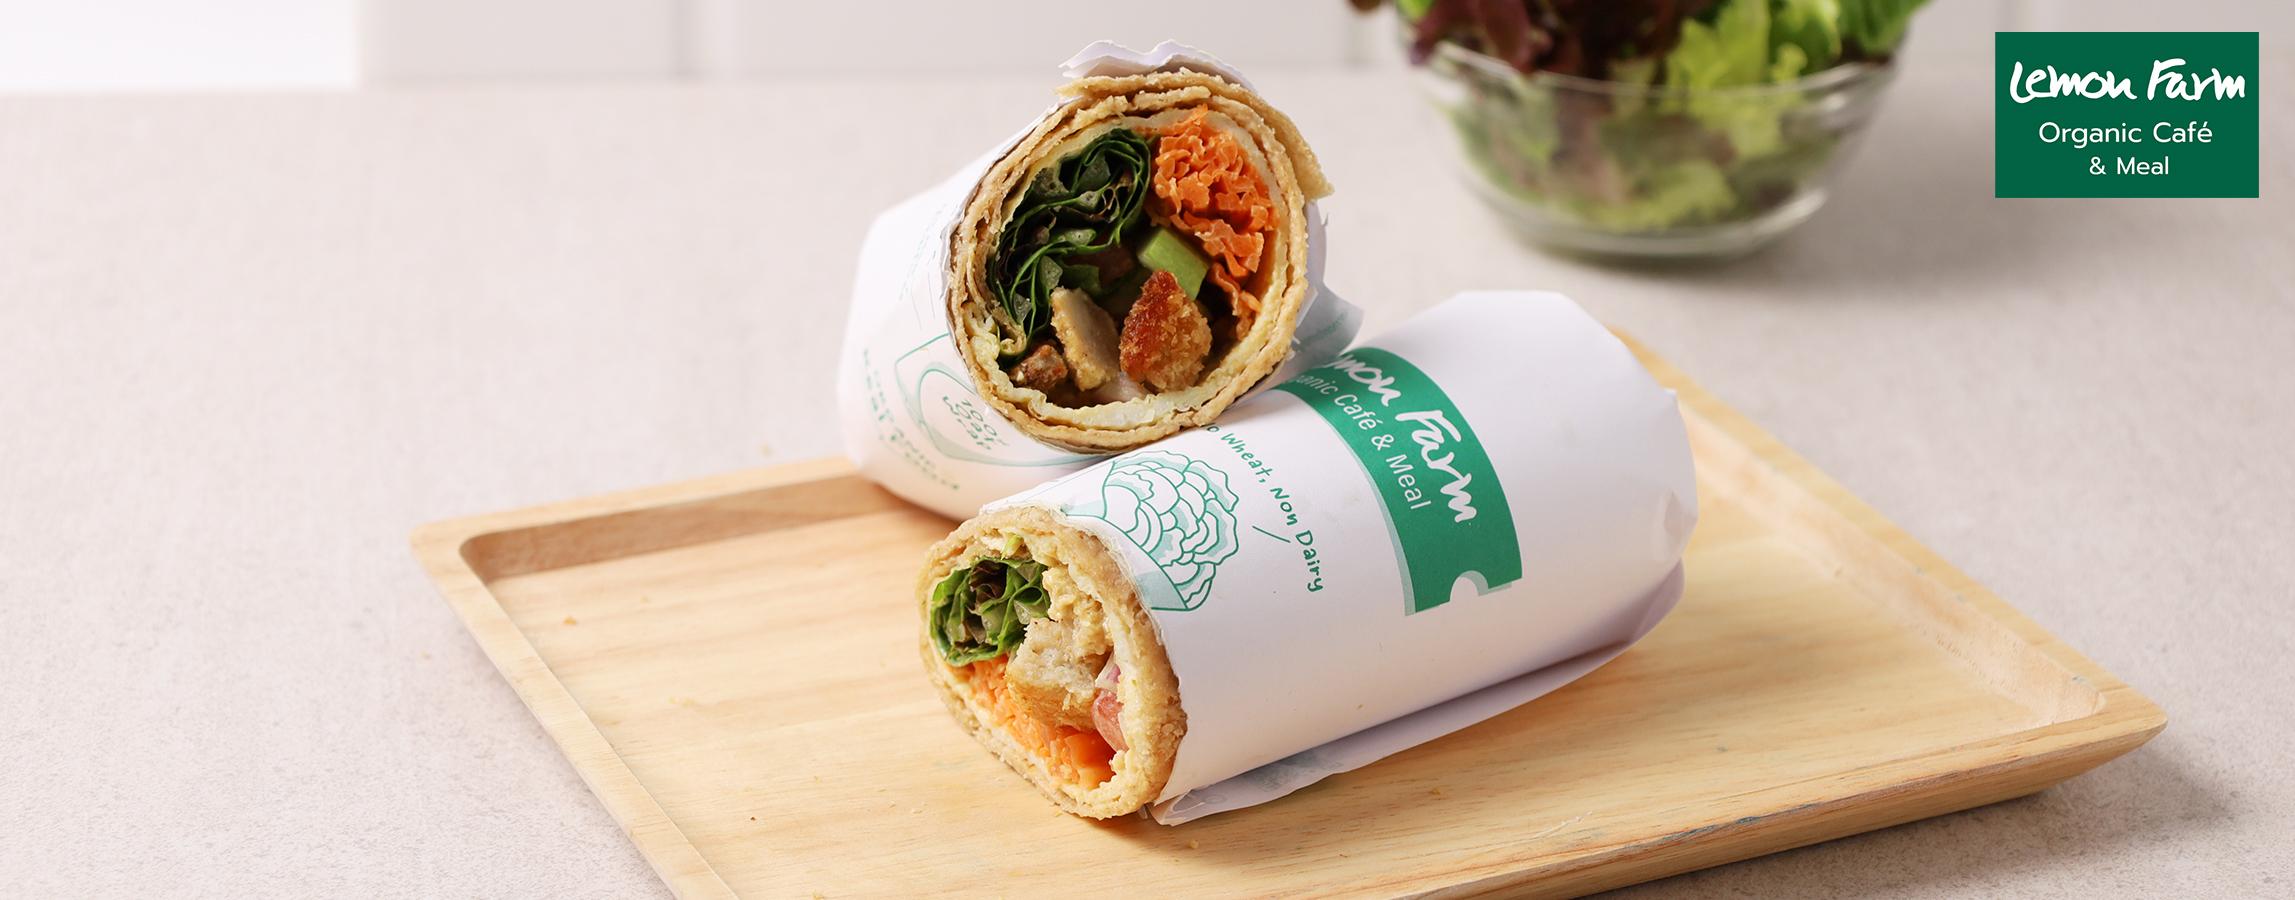 ซีซาร์แรพข้าวโอ๊ตปลานิลอินทรีย์ เมนูแนะนำจากร้าน Organic Cafe & Meal 